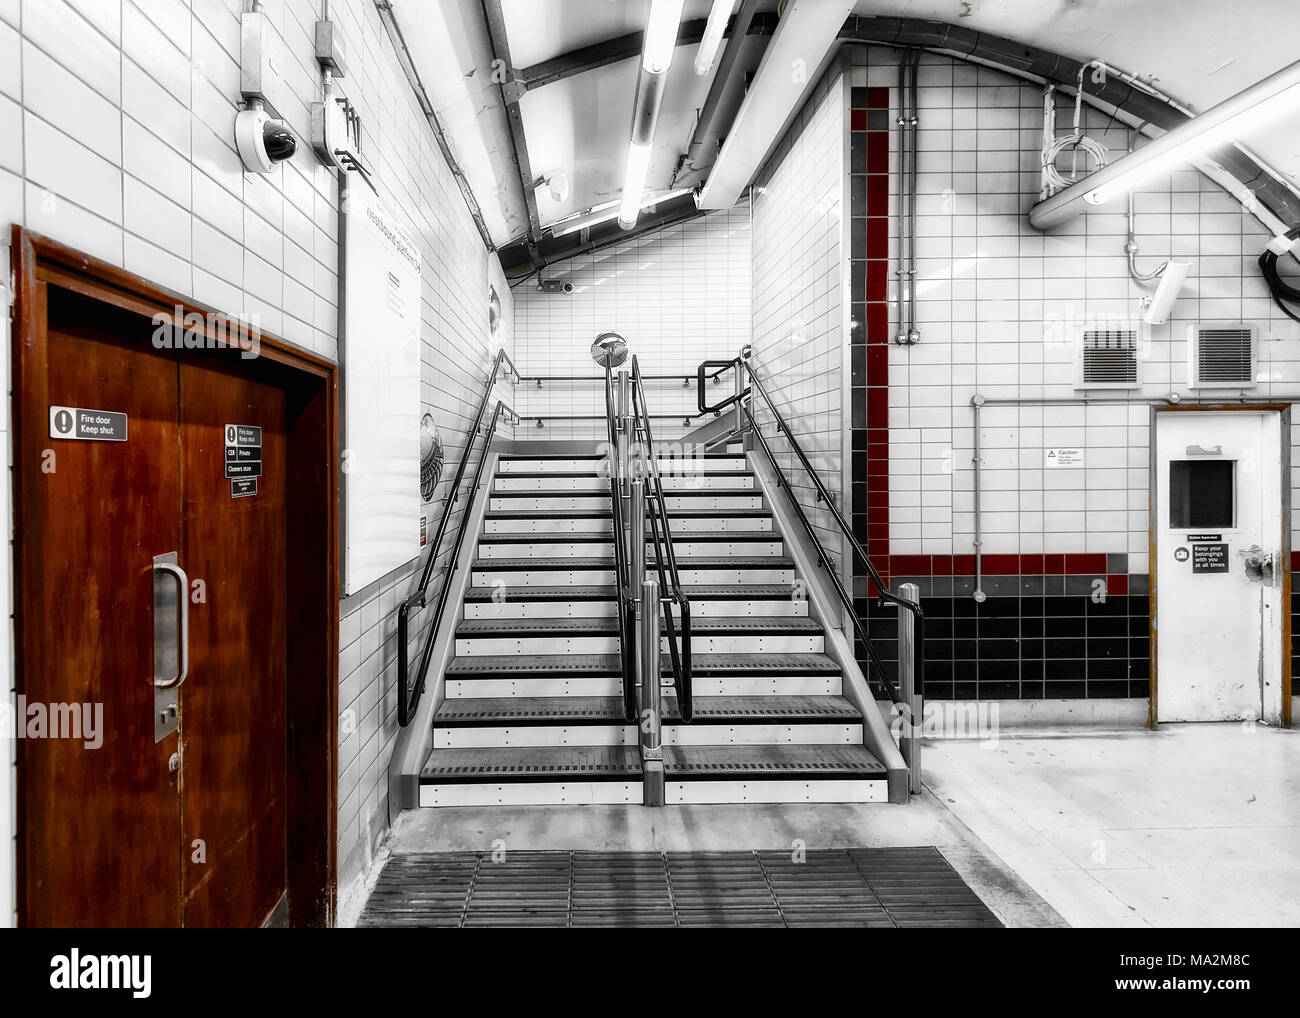 London Underground Tube Station: Latimer Road Stock Photo